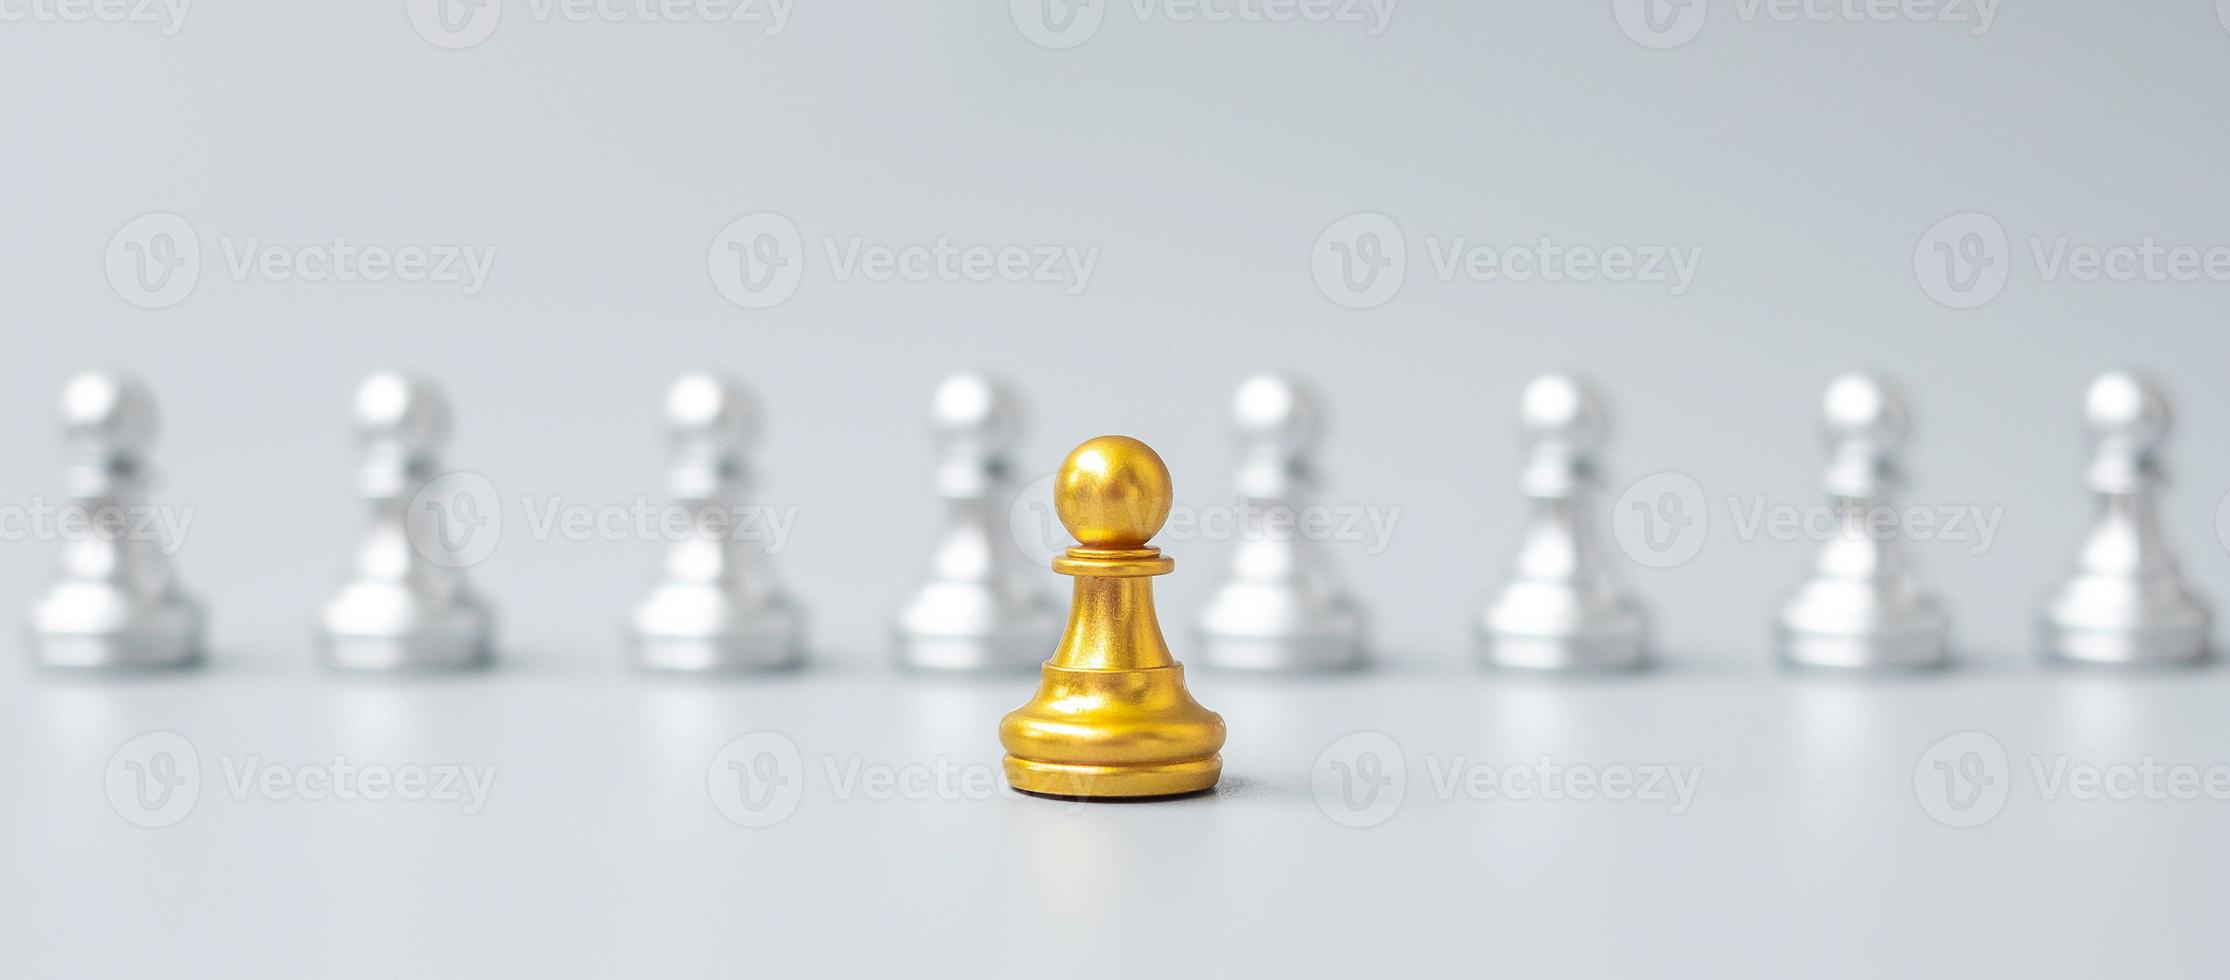 gouden schaakpionstukken of leiderzakenman vallen op in de menigte mensen van zilveren mannen. leiderschap, business, team, teamwork en human resource management concept foto